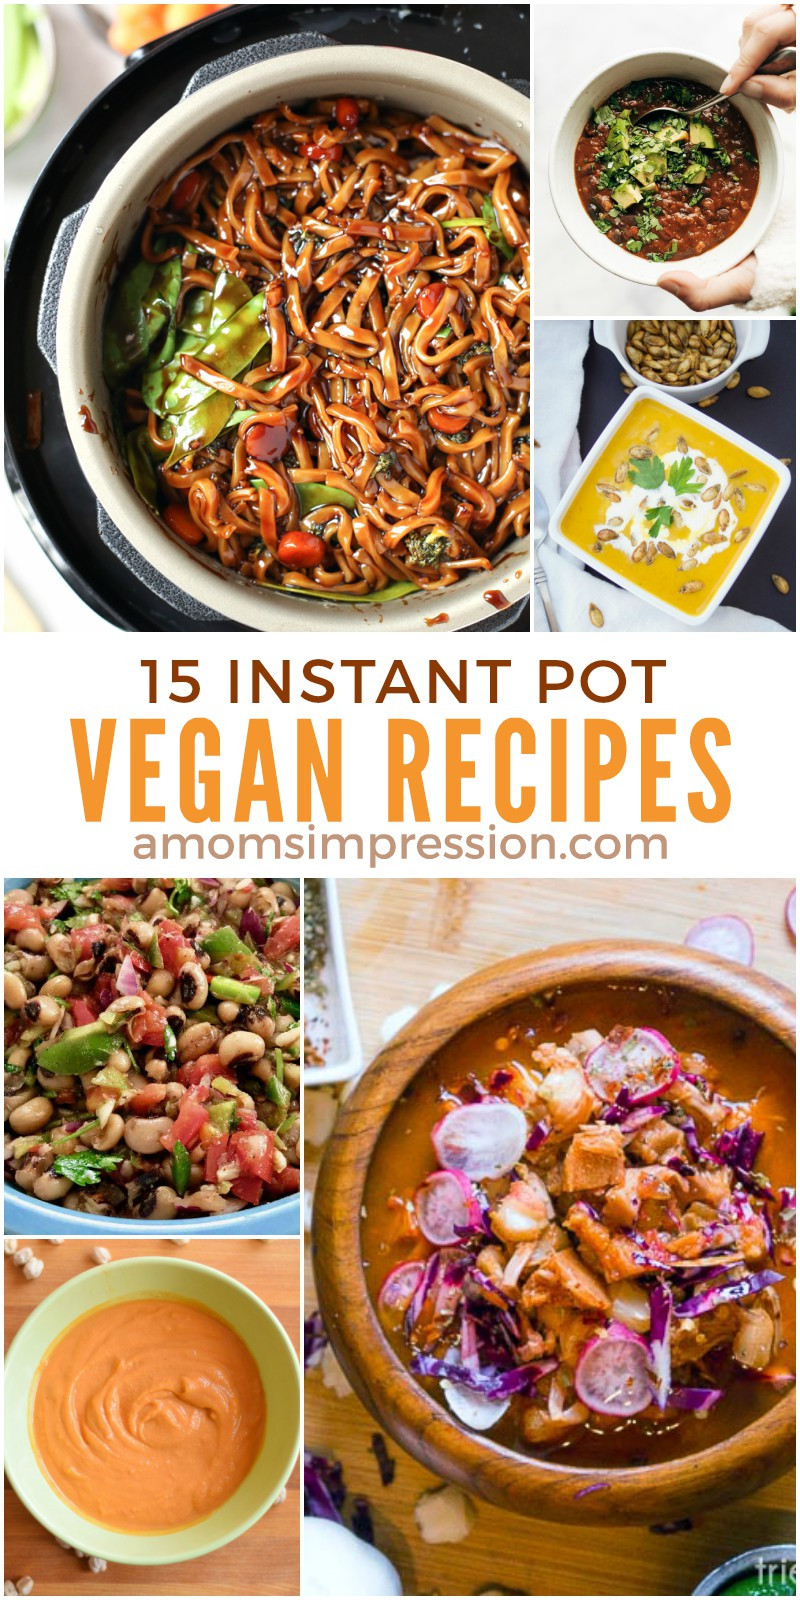 Healthy Instant Pot Recipes Vegetarian
 15 Healthy and Delicious Vegan Instant Pot Recipes